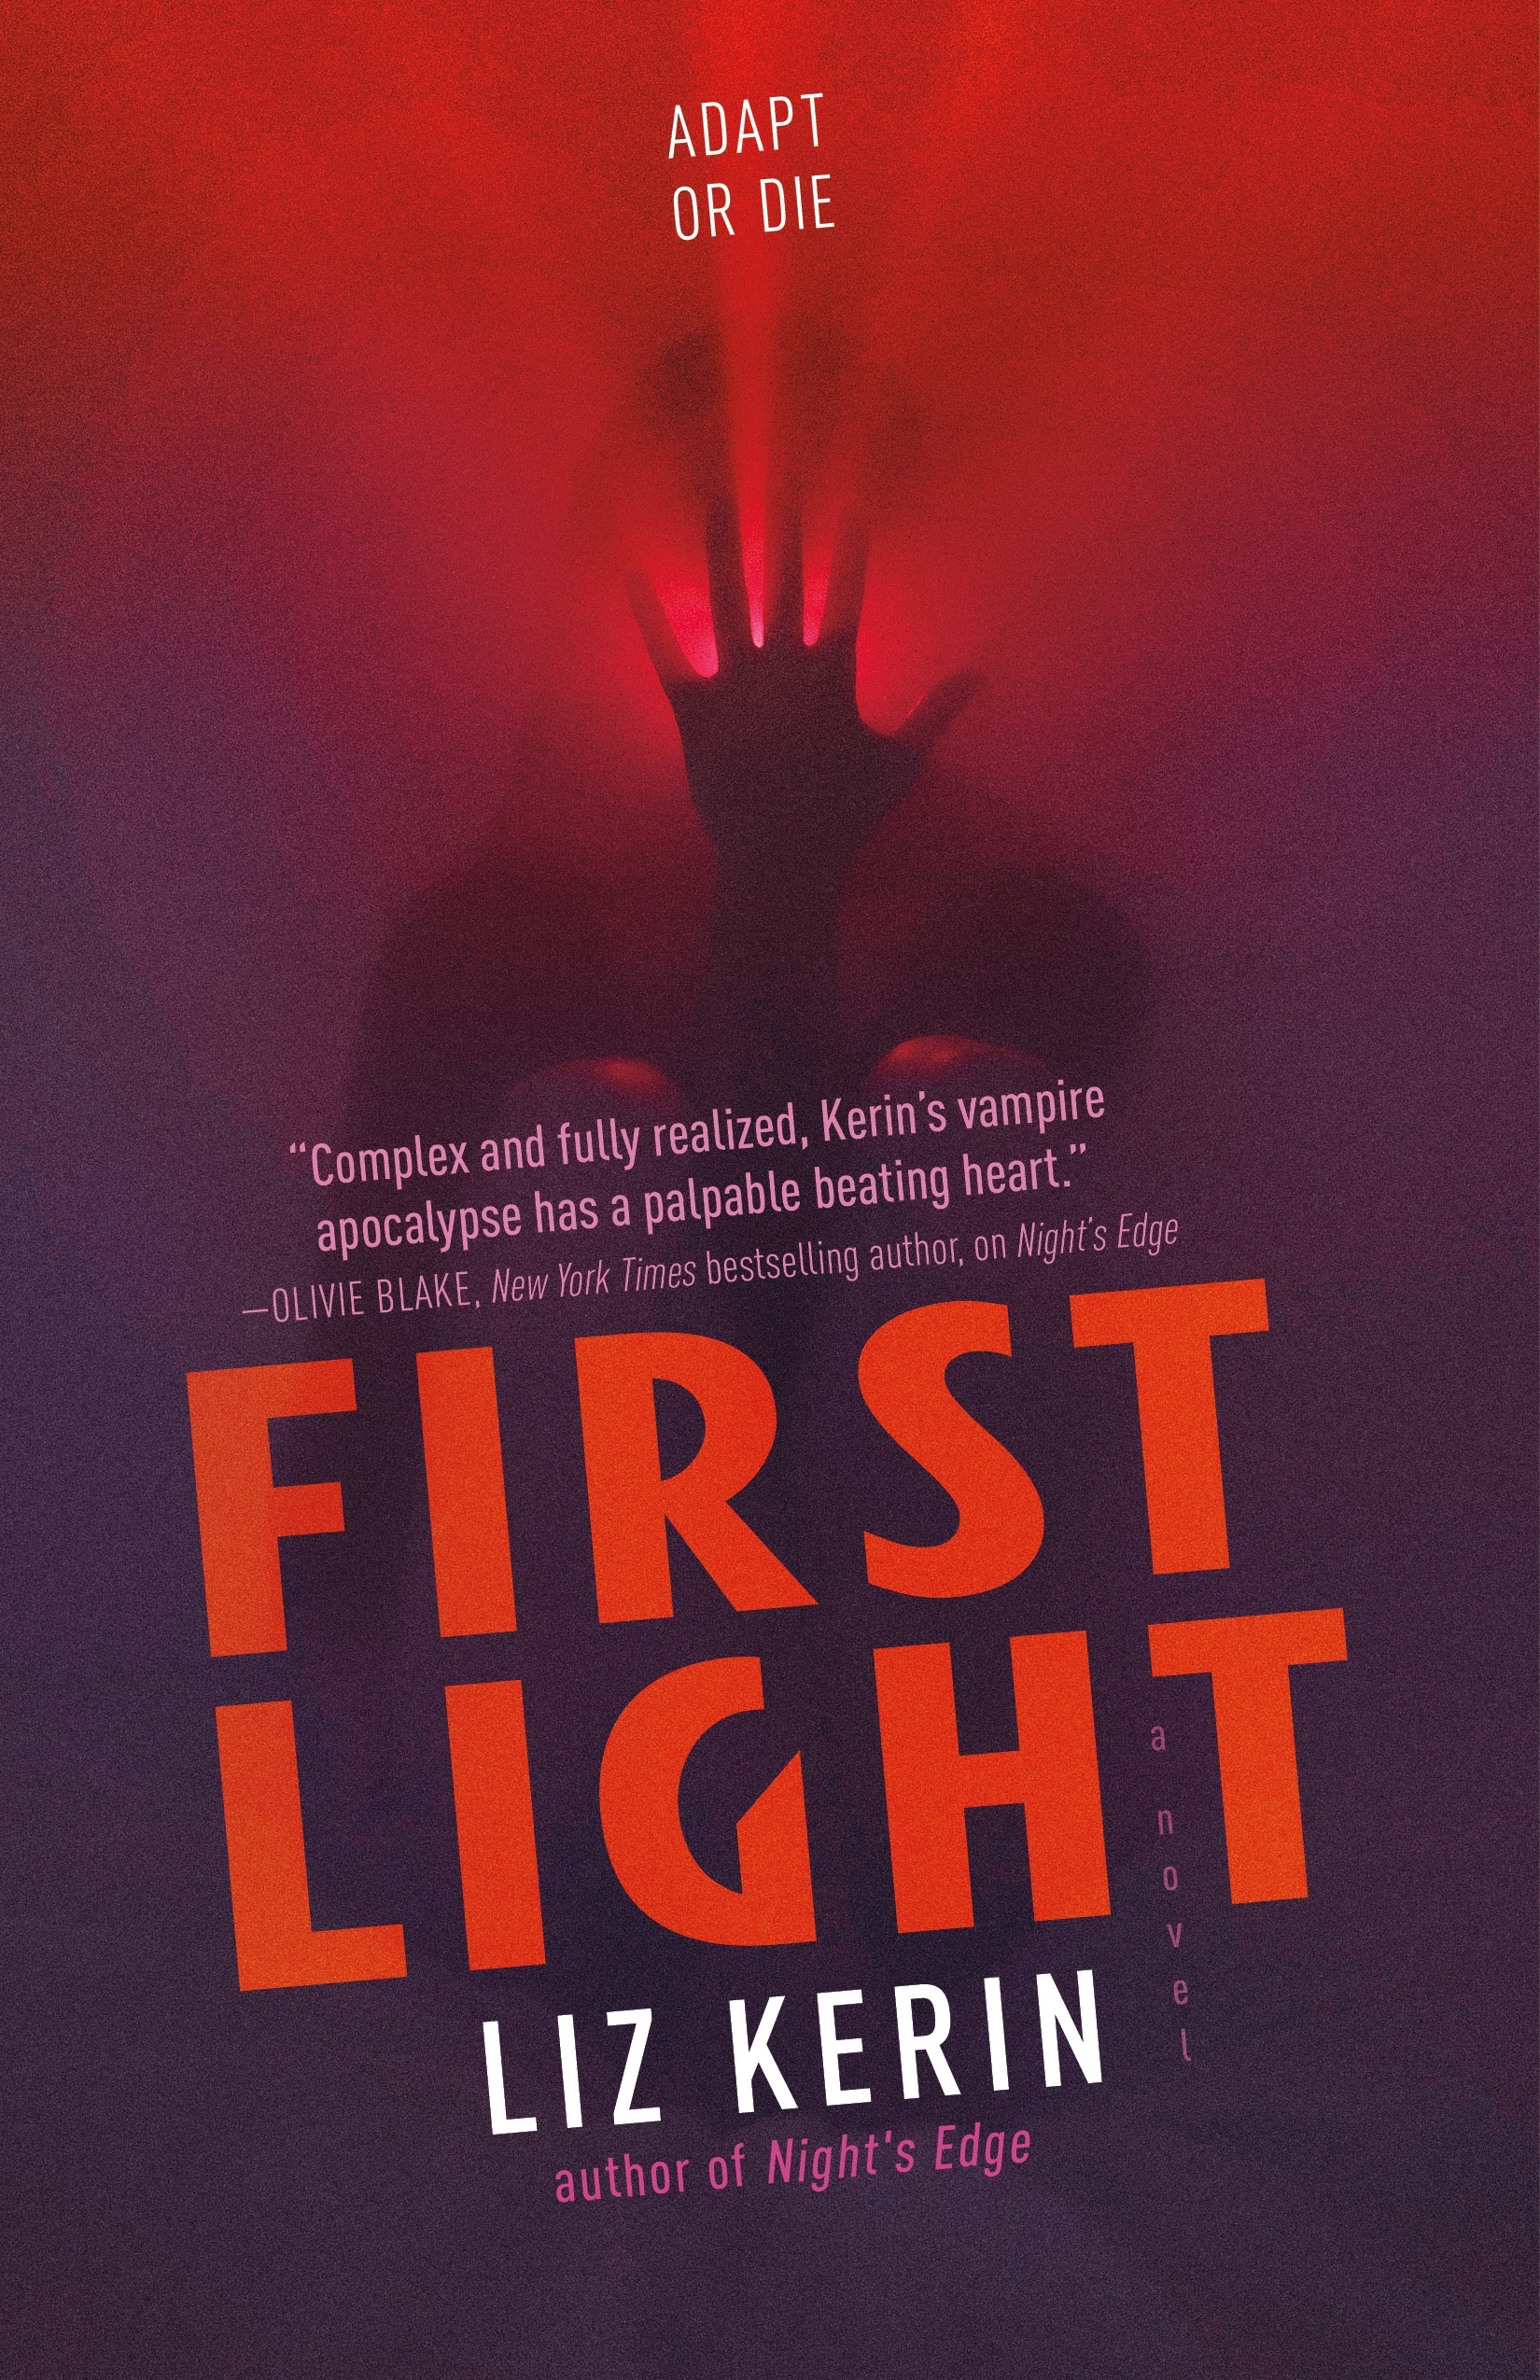 First Light : A Novel by Liz Kerin